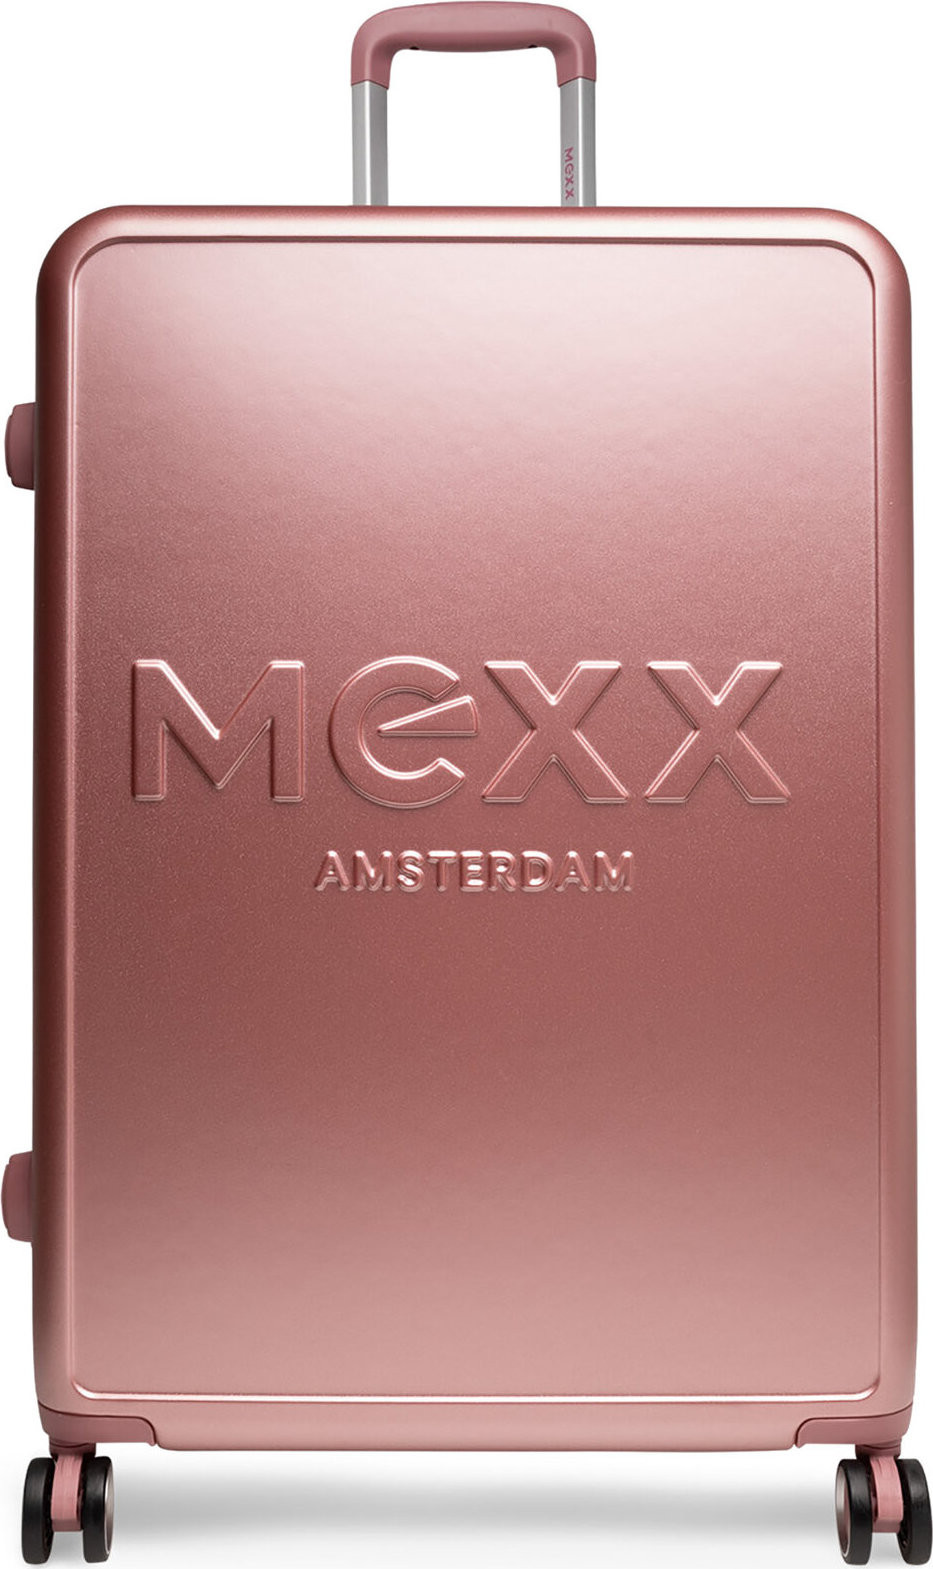 Velký kufr MEXX MEXX-L-033-05 PINK Růžová